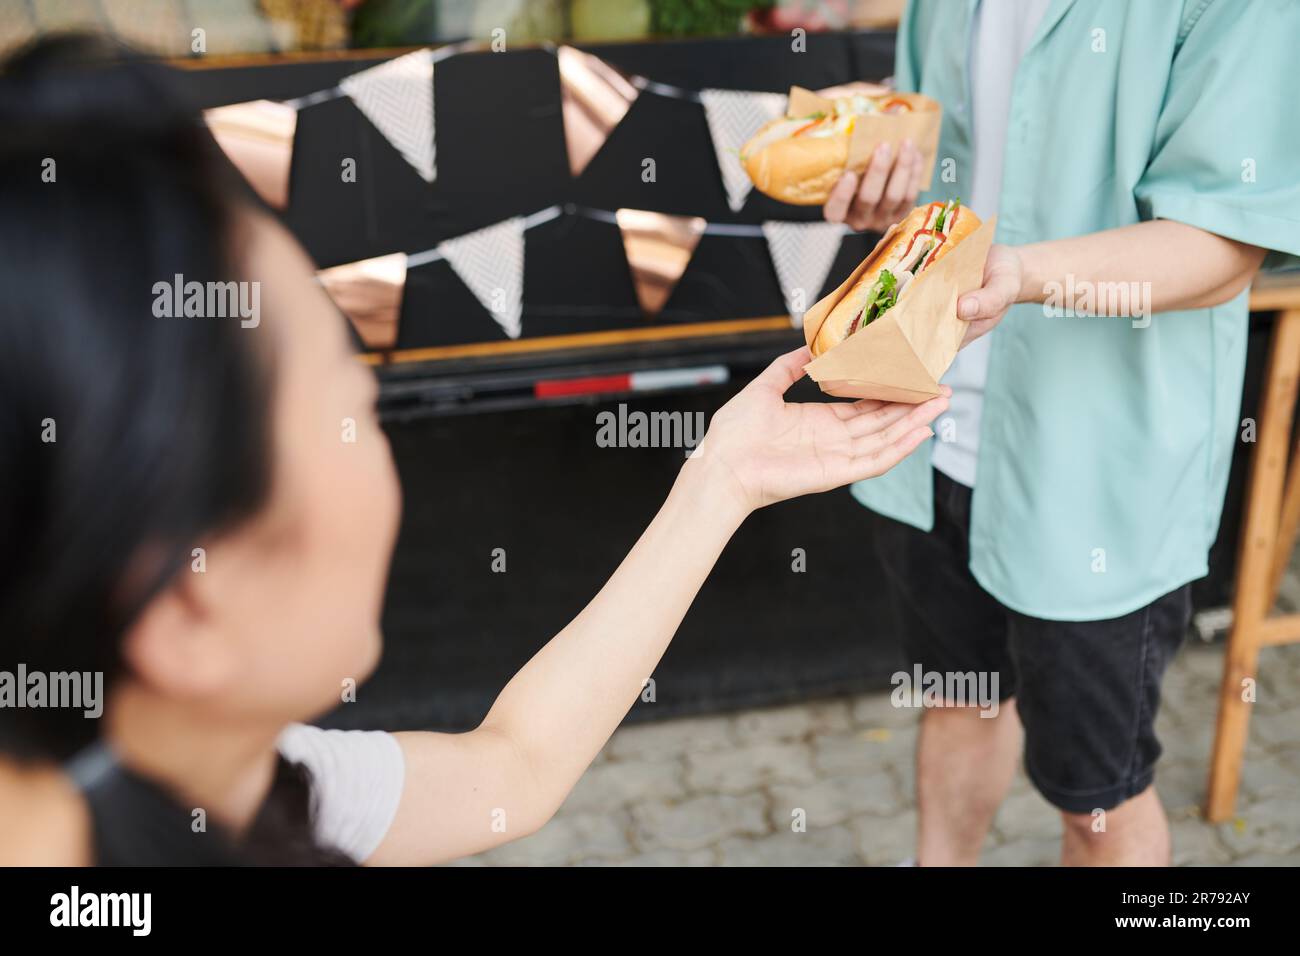 Gros plan d'une jeune femme qui prend un hot dog frais et appétissant enveloppé dans du papier de la main de son petit ami en tenues décontractées debout devant Banque D'Images